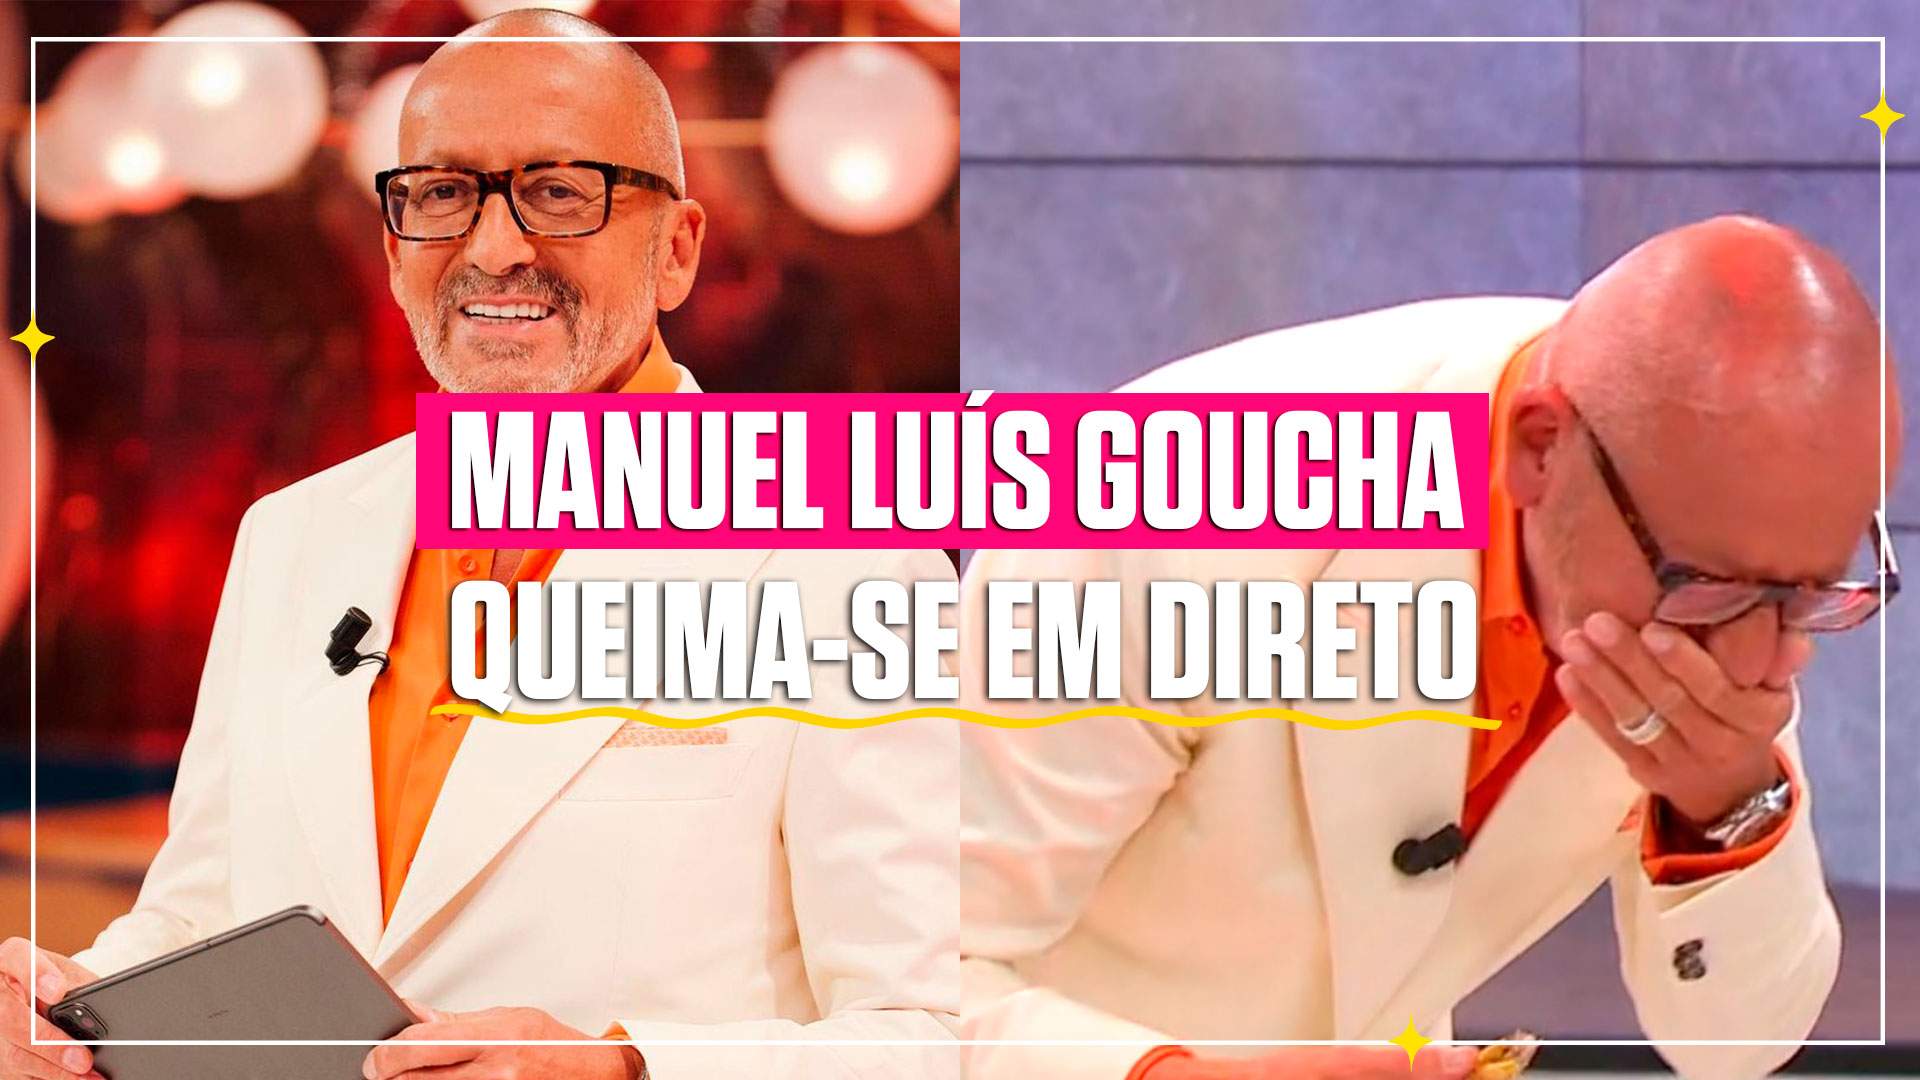 Manuel Luís Goucha queima-se em direto